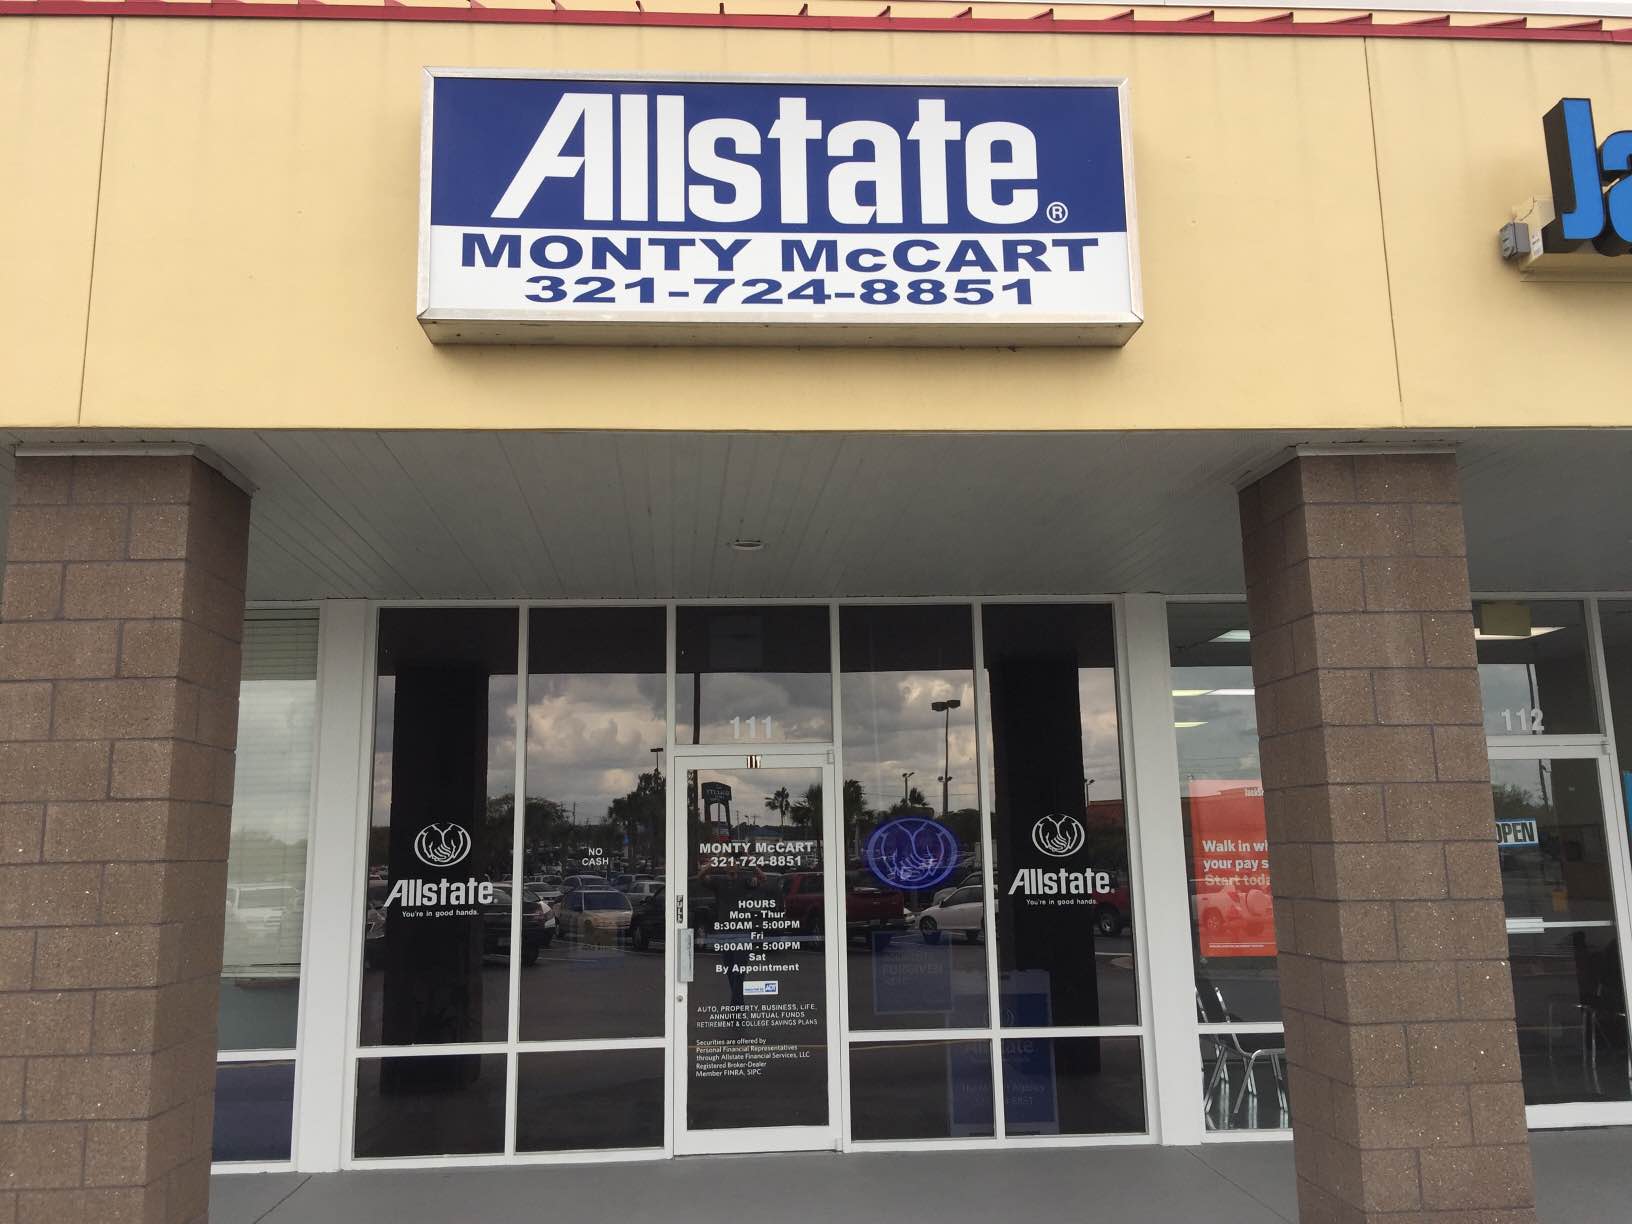 Monty McCart: Allstate Insurance